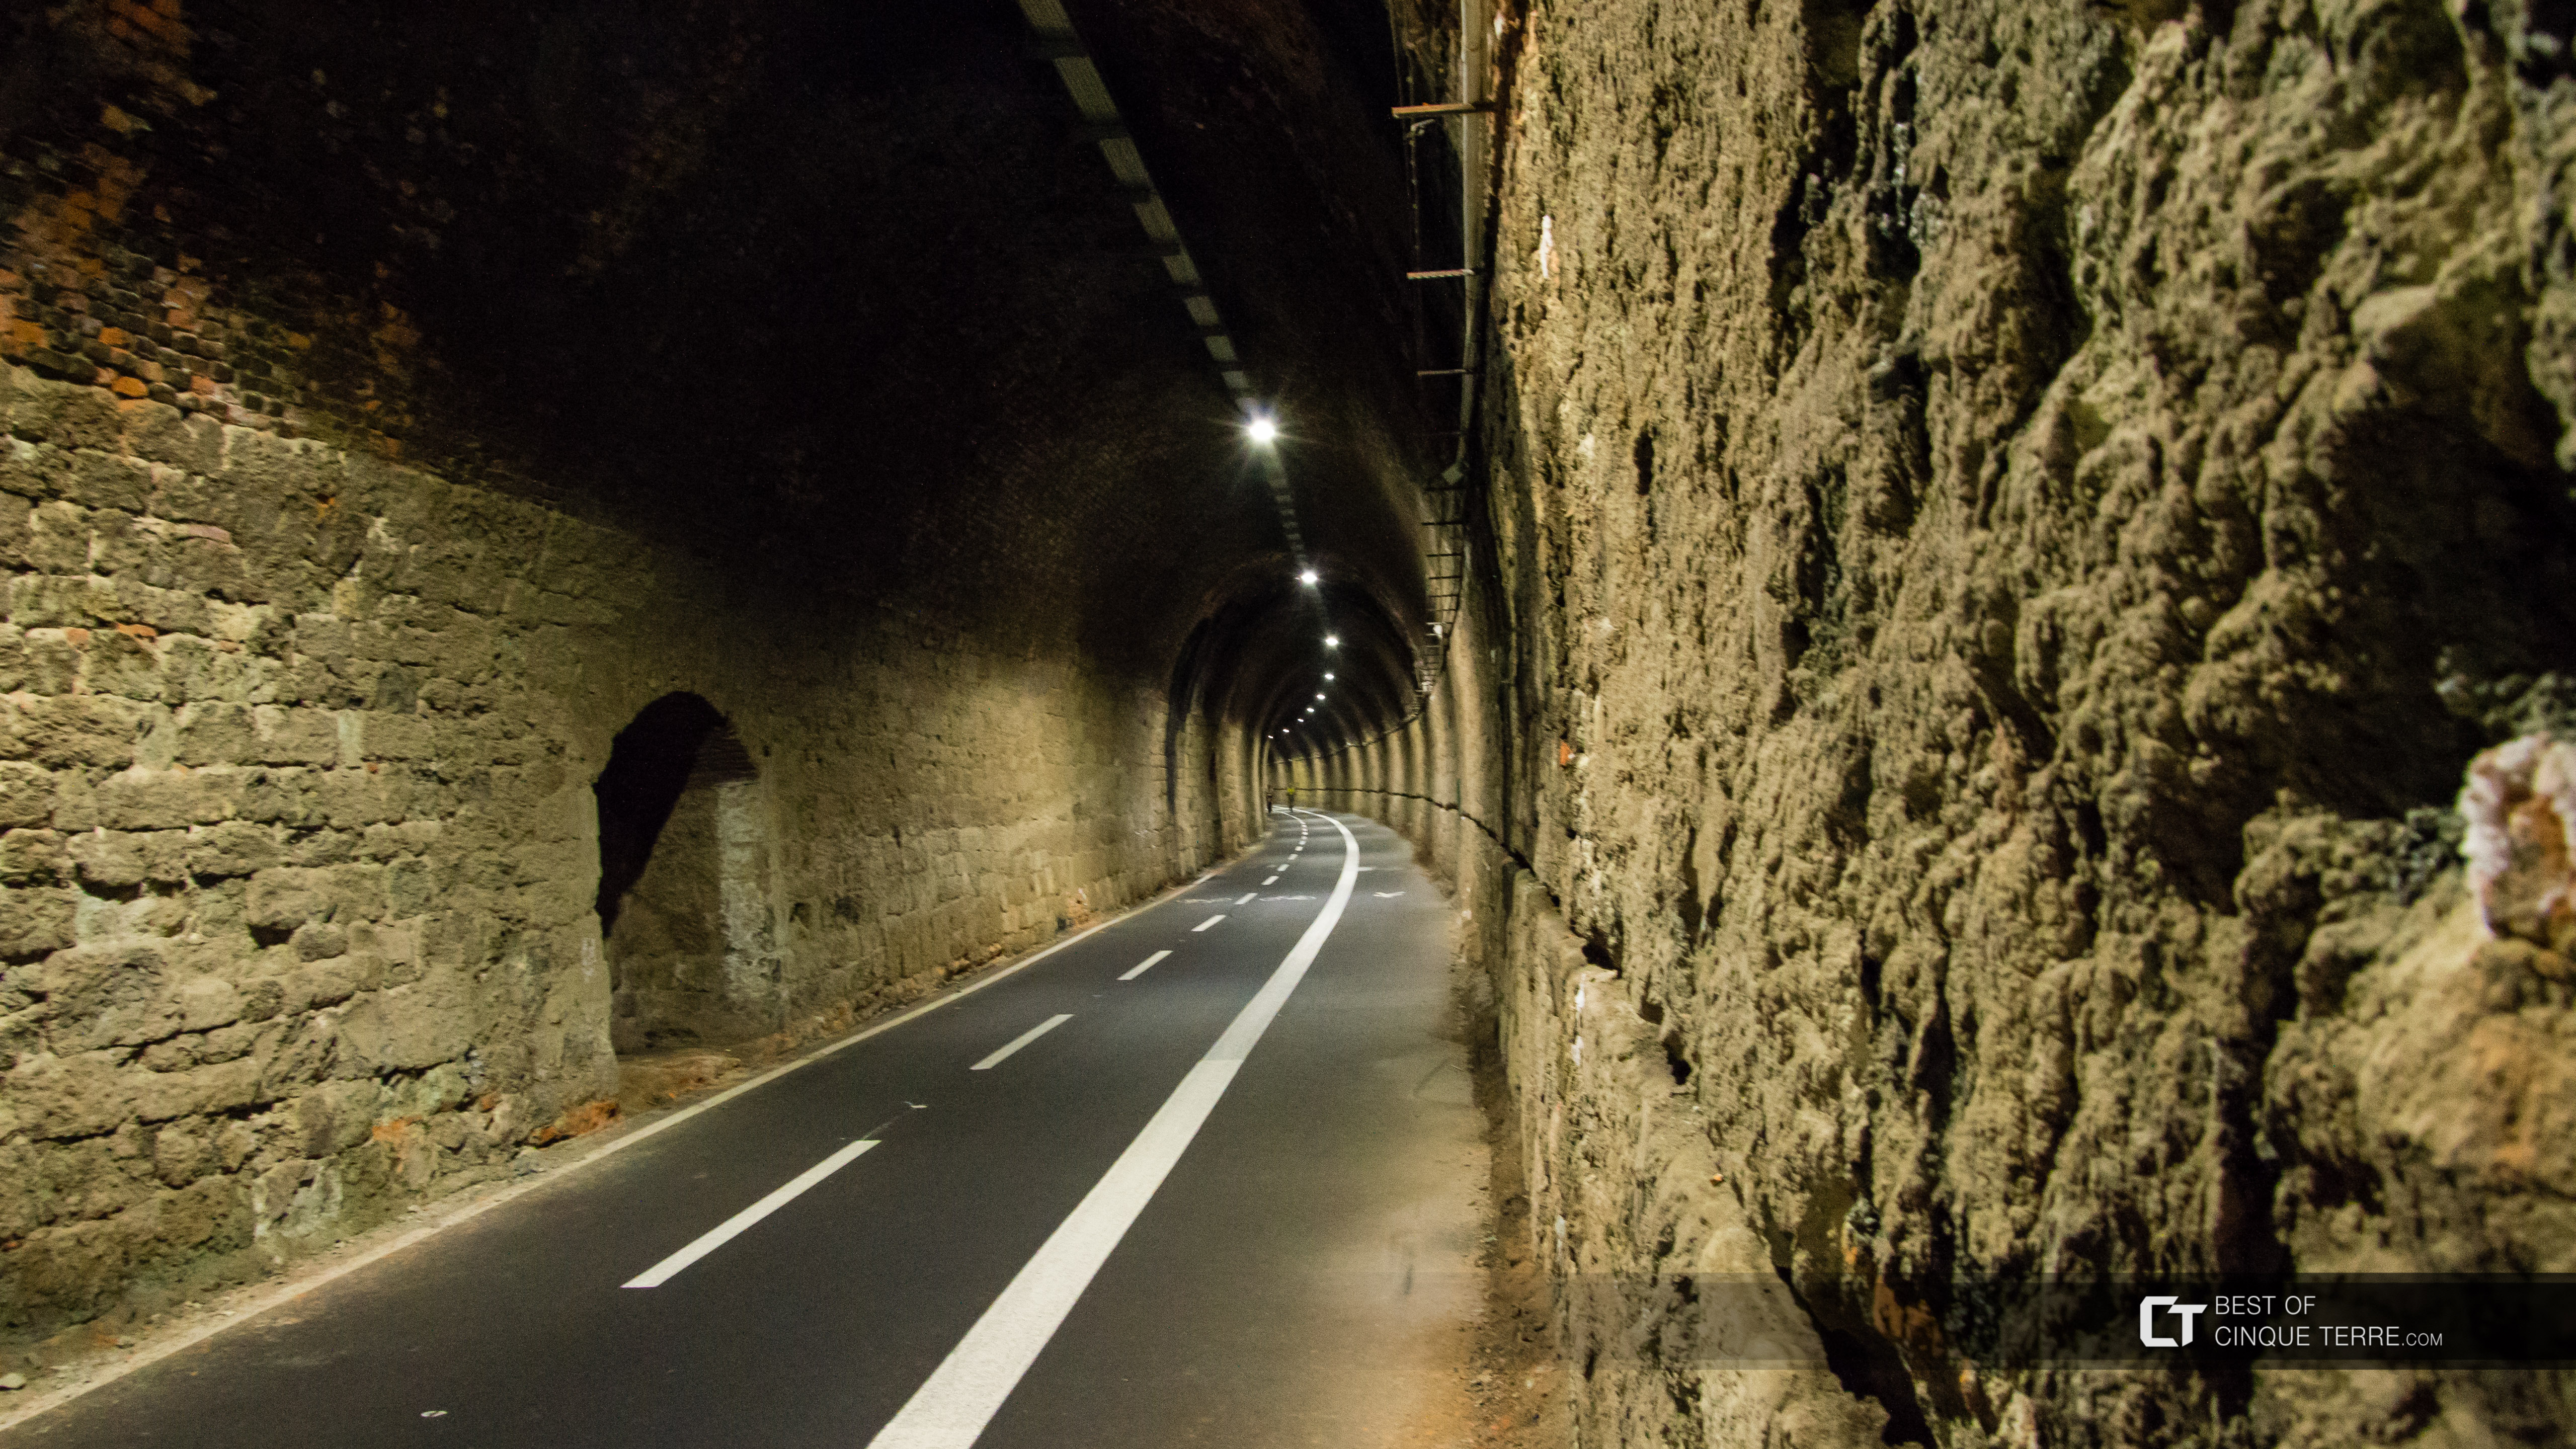 Túnel ciclista y peatonal Levanto - Bonassola - Framura, Italia